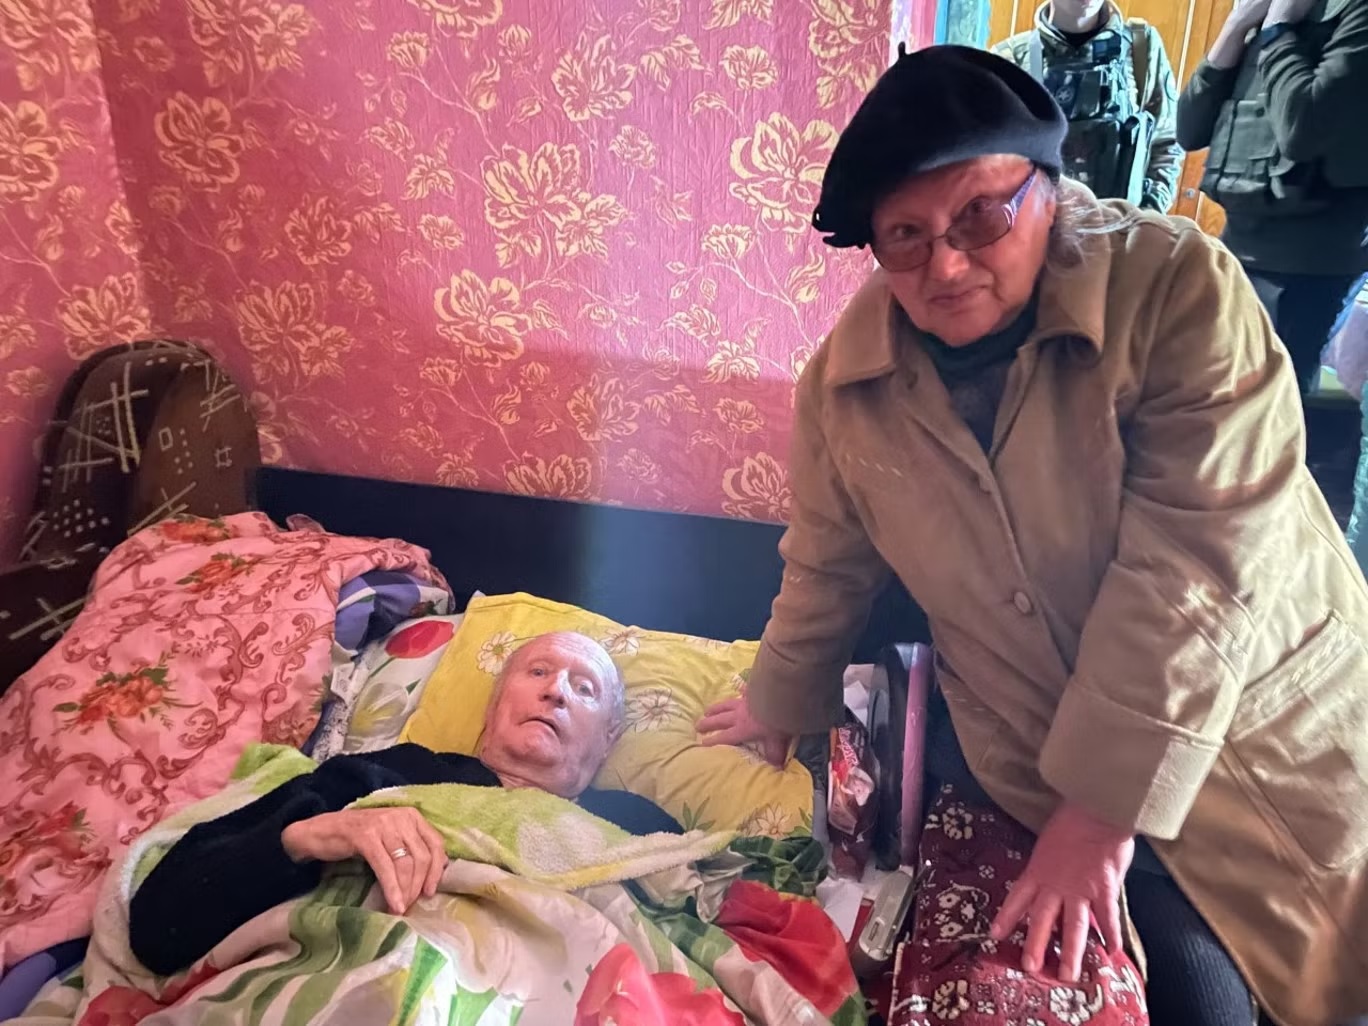 مايا تشيكونينكو (75 عاماً) وزوجها أناتولي (81 عاماً) يدرسان قرار البقاء في المنطقة أو الهرب من الغارات الروسية مرة جديدة (اندبندنت/كيم سنغوبتا) 